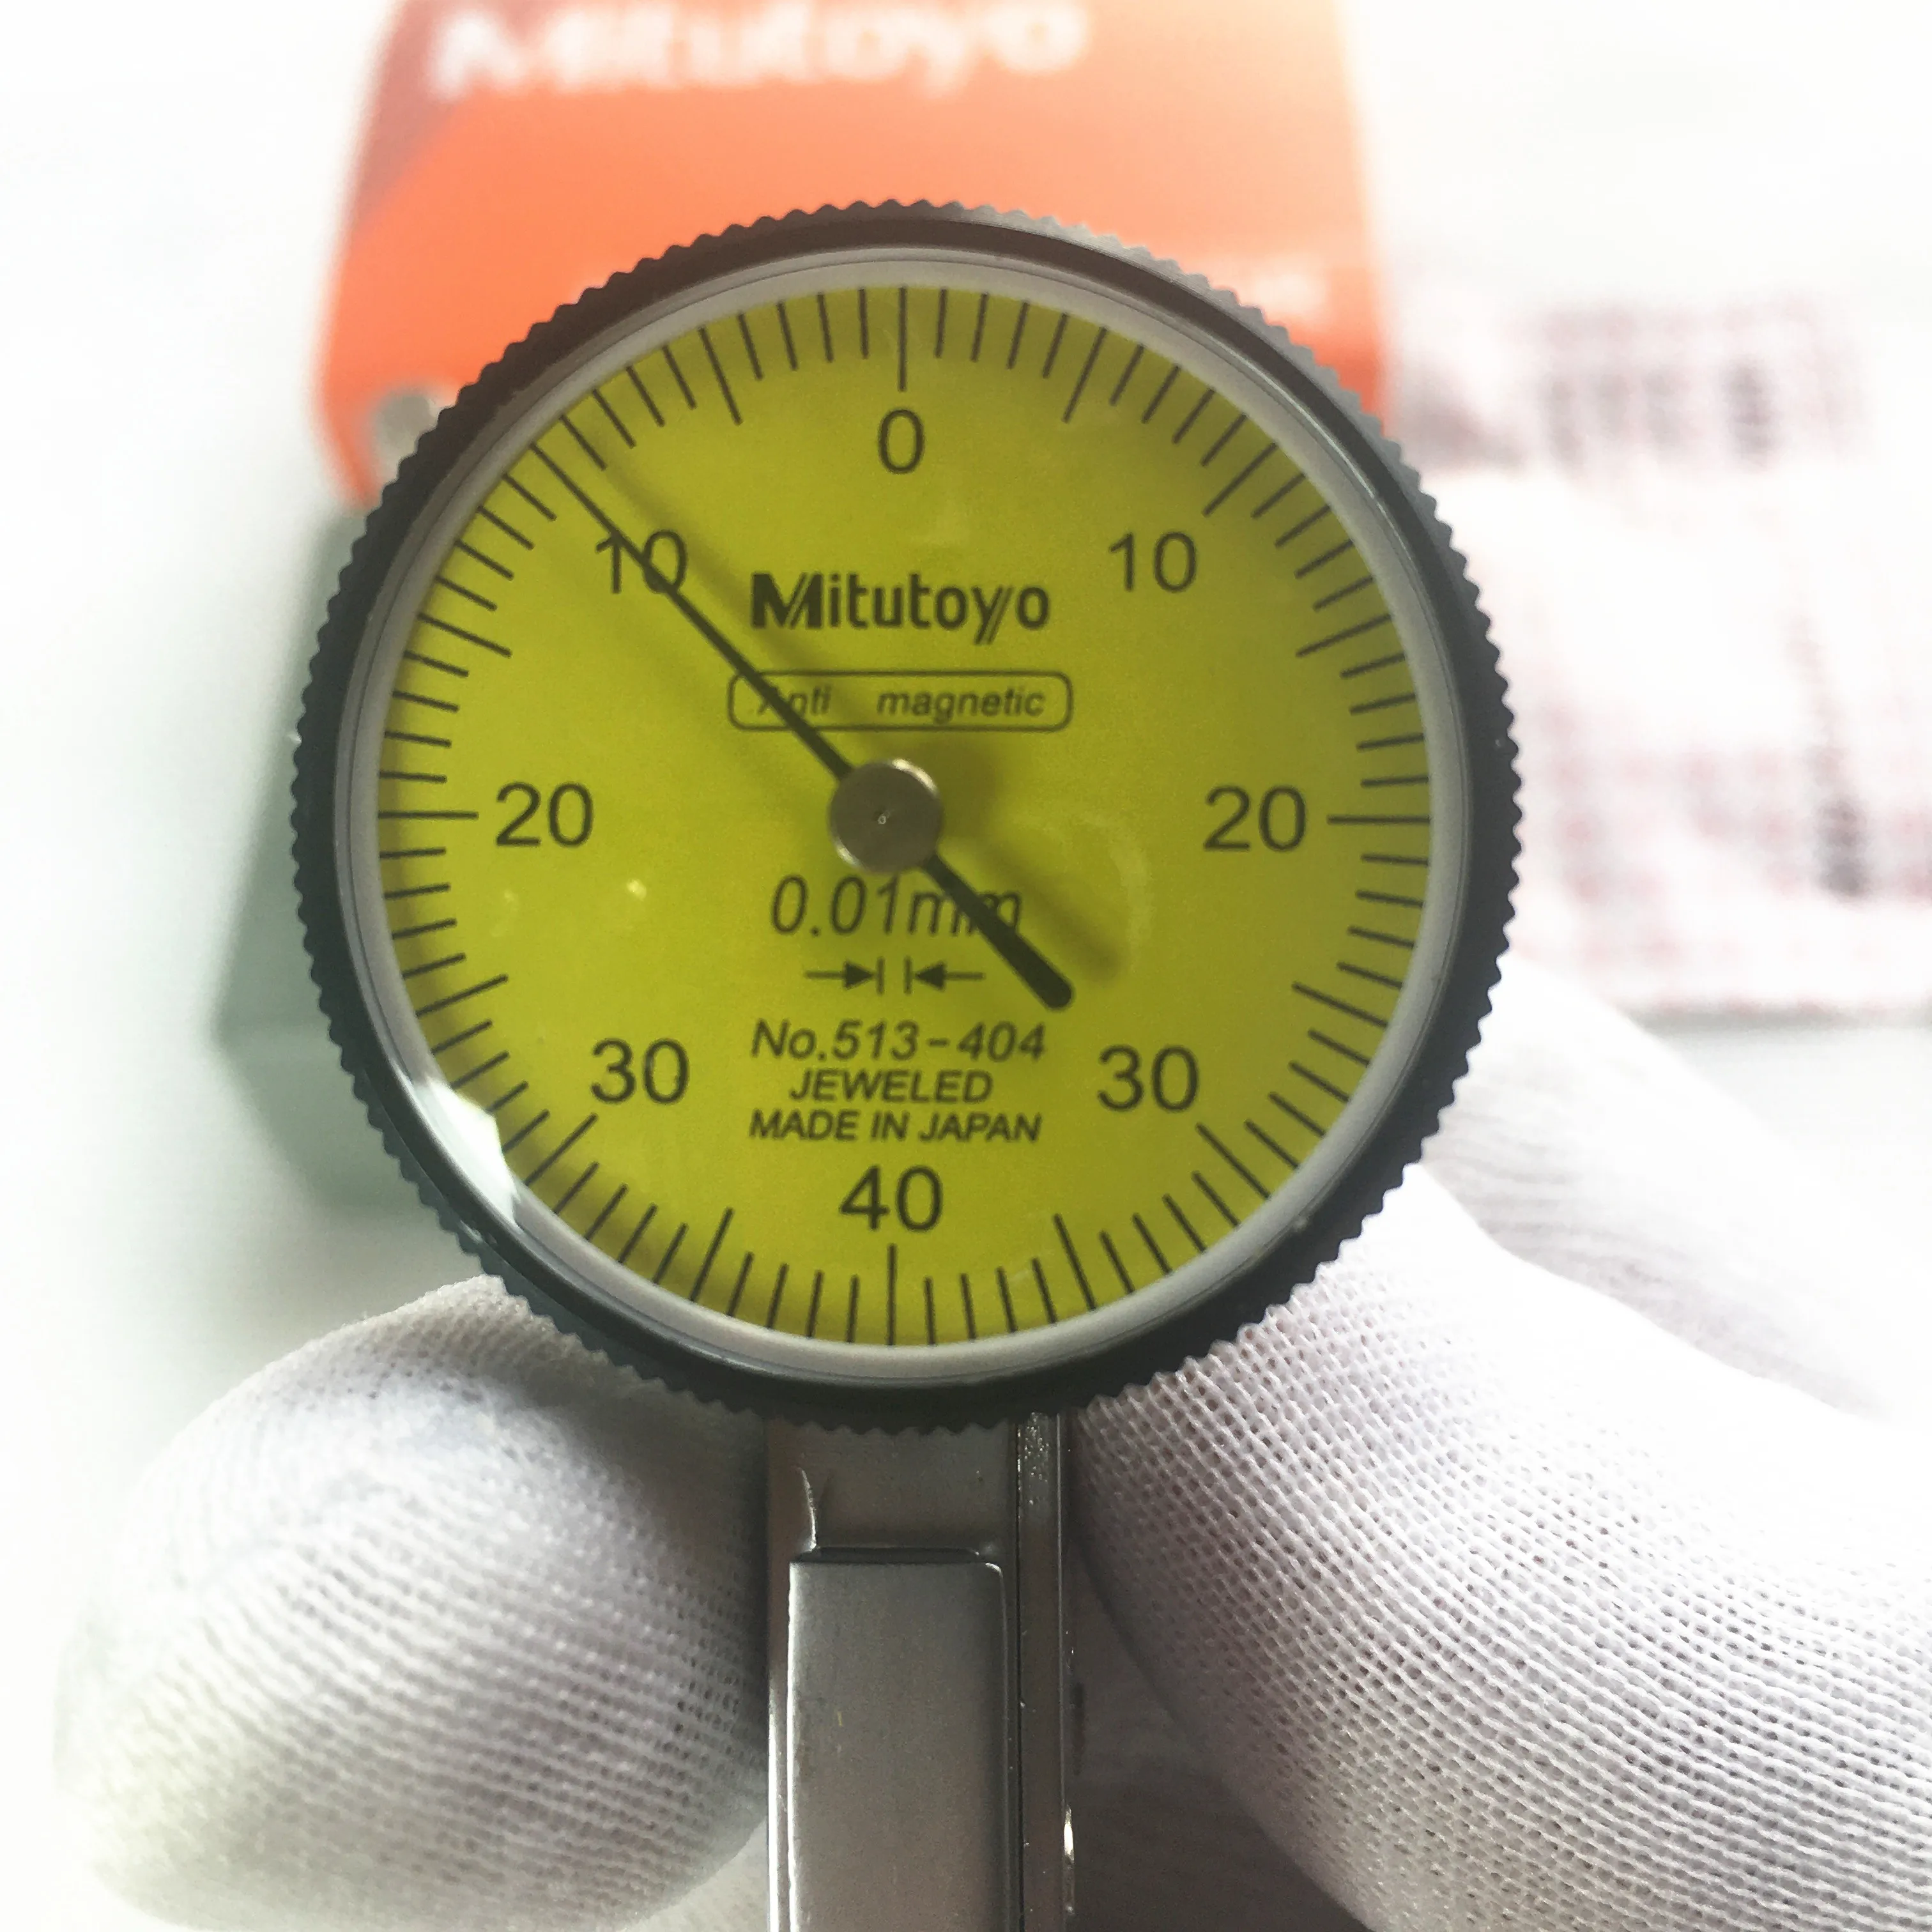 

Индикатор абсолютного циферблата aomitutoyo № 404-0,01, измеритель диаметра аналогового рычага шкалы, точность 0,8 мм, диапазон измерения 0-мм